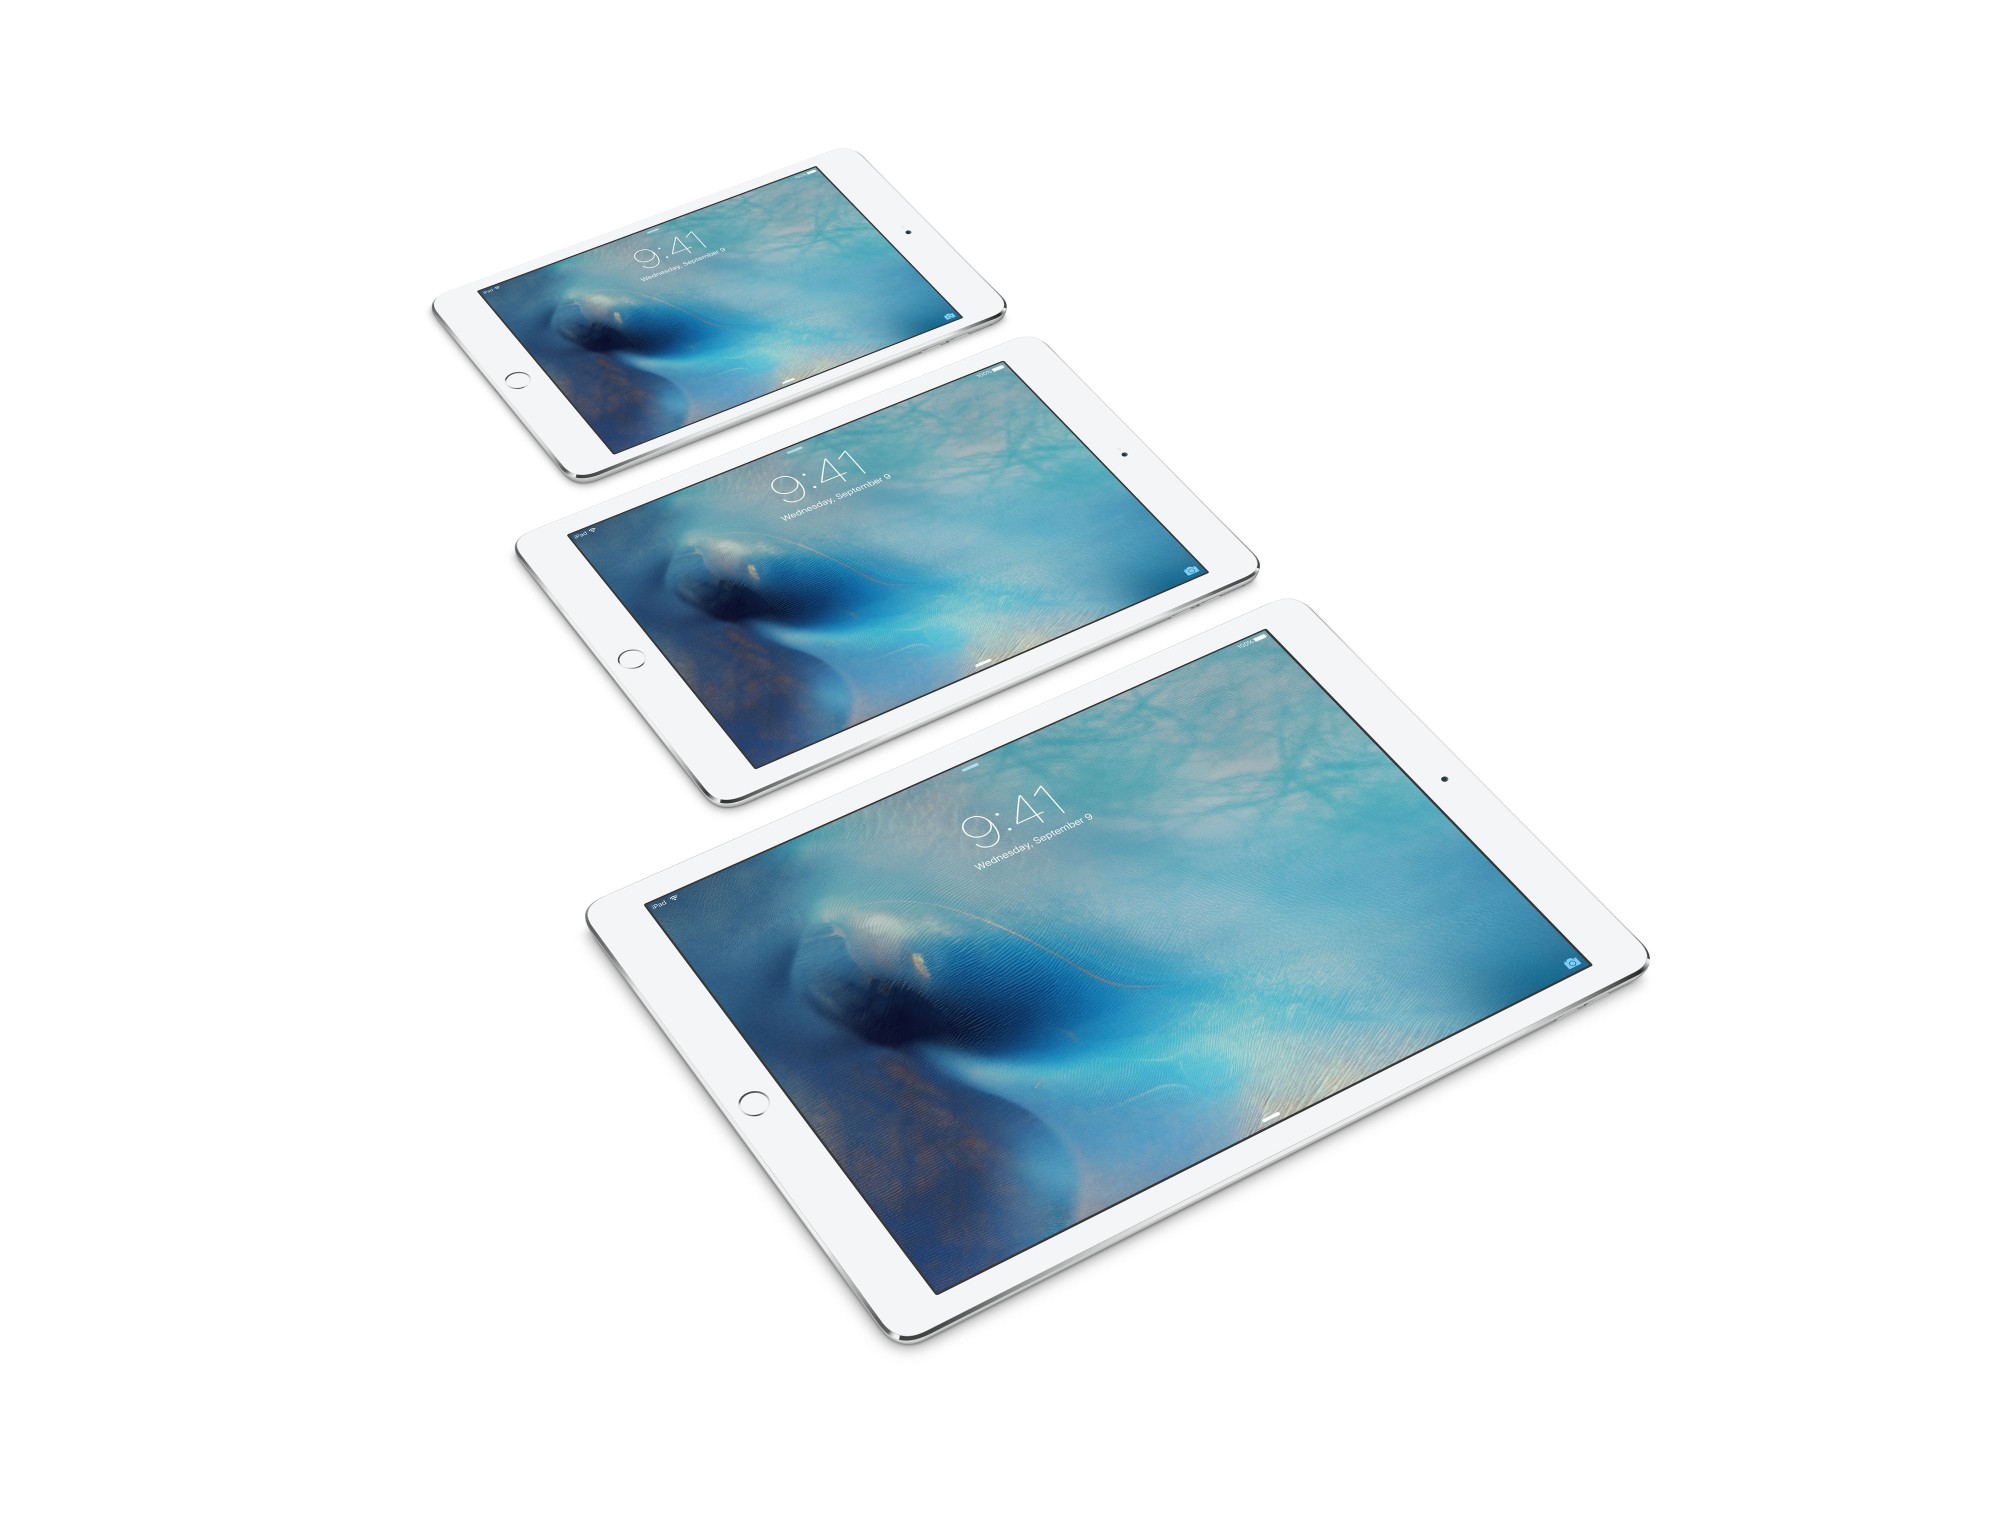 iPad Pro comparted to iPAd Air 2 and iPad Mini